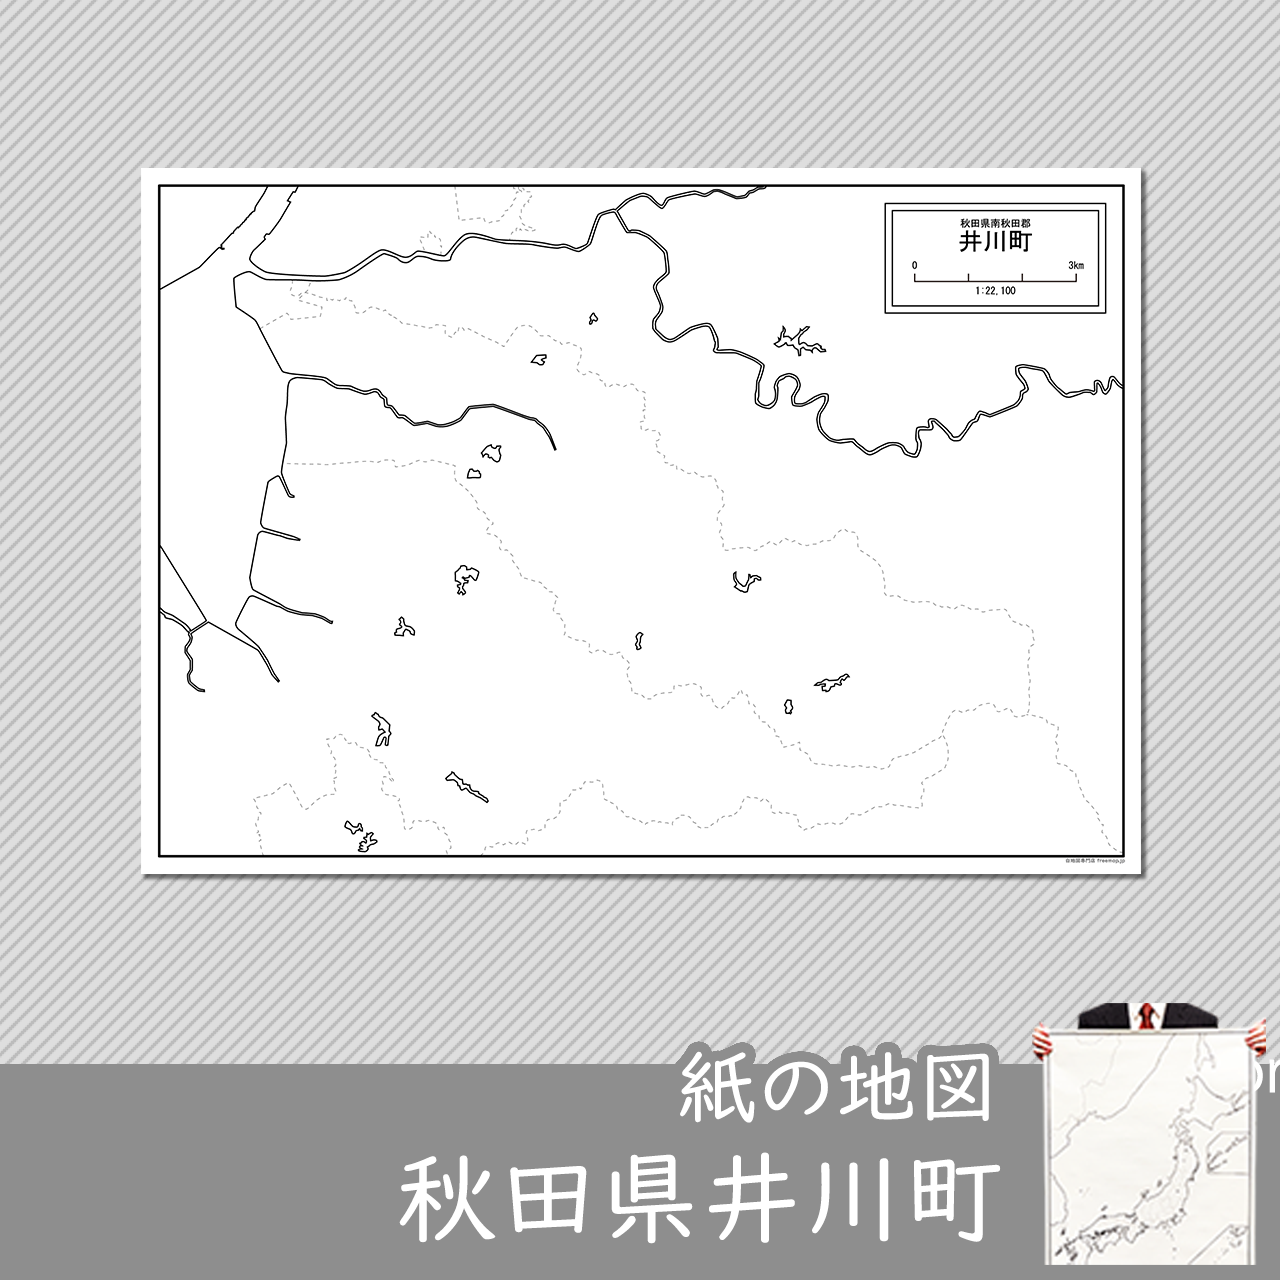 井川町の紙の白地図